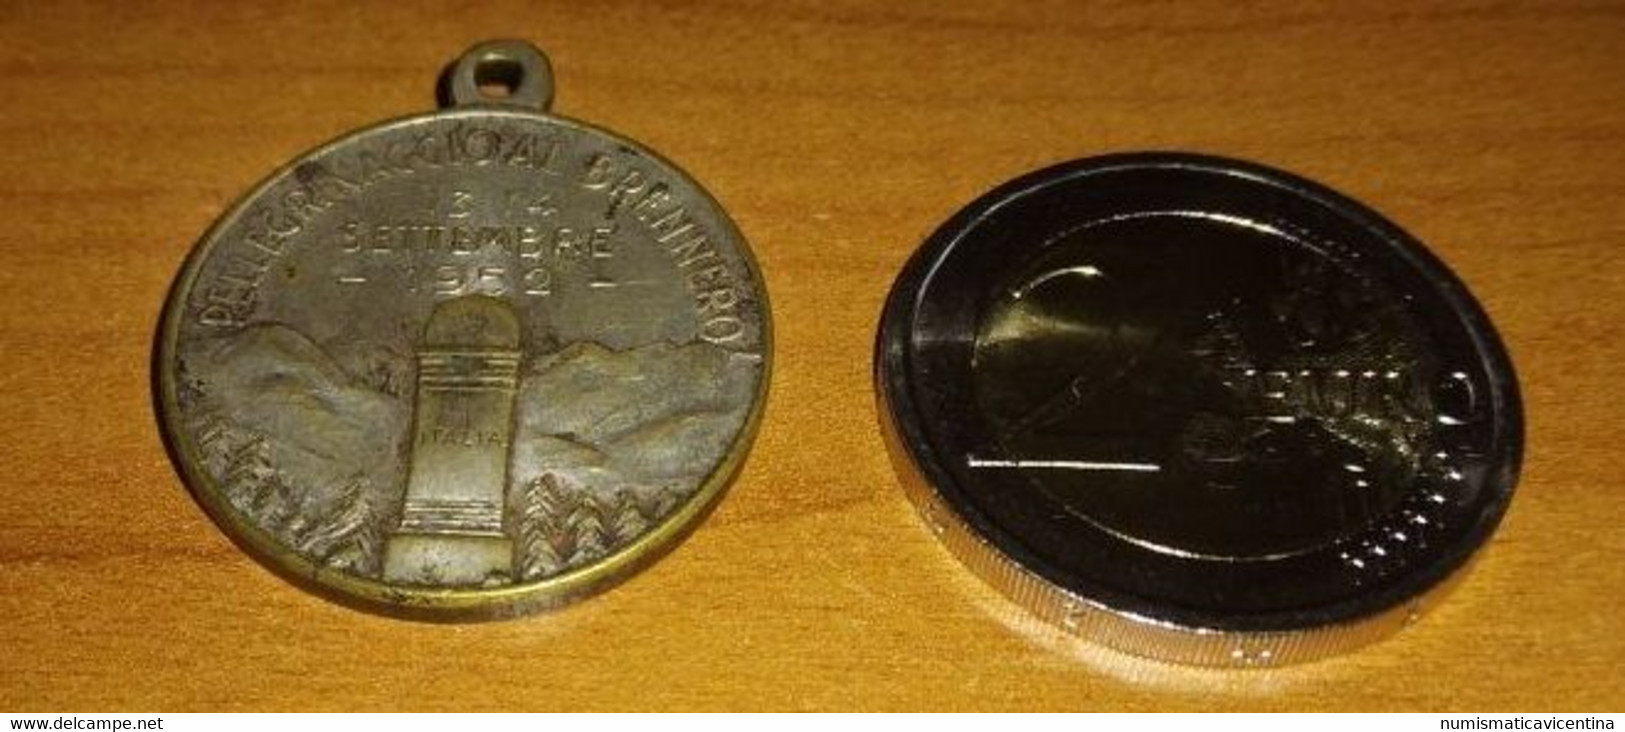 Medaglia  Combattenti E Reduci Di Vicenza 1952 Medaglia  Pellegrinaggio Al Brennero - Italia